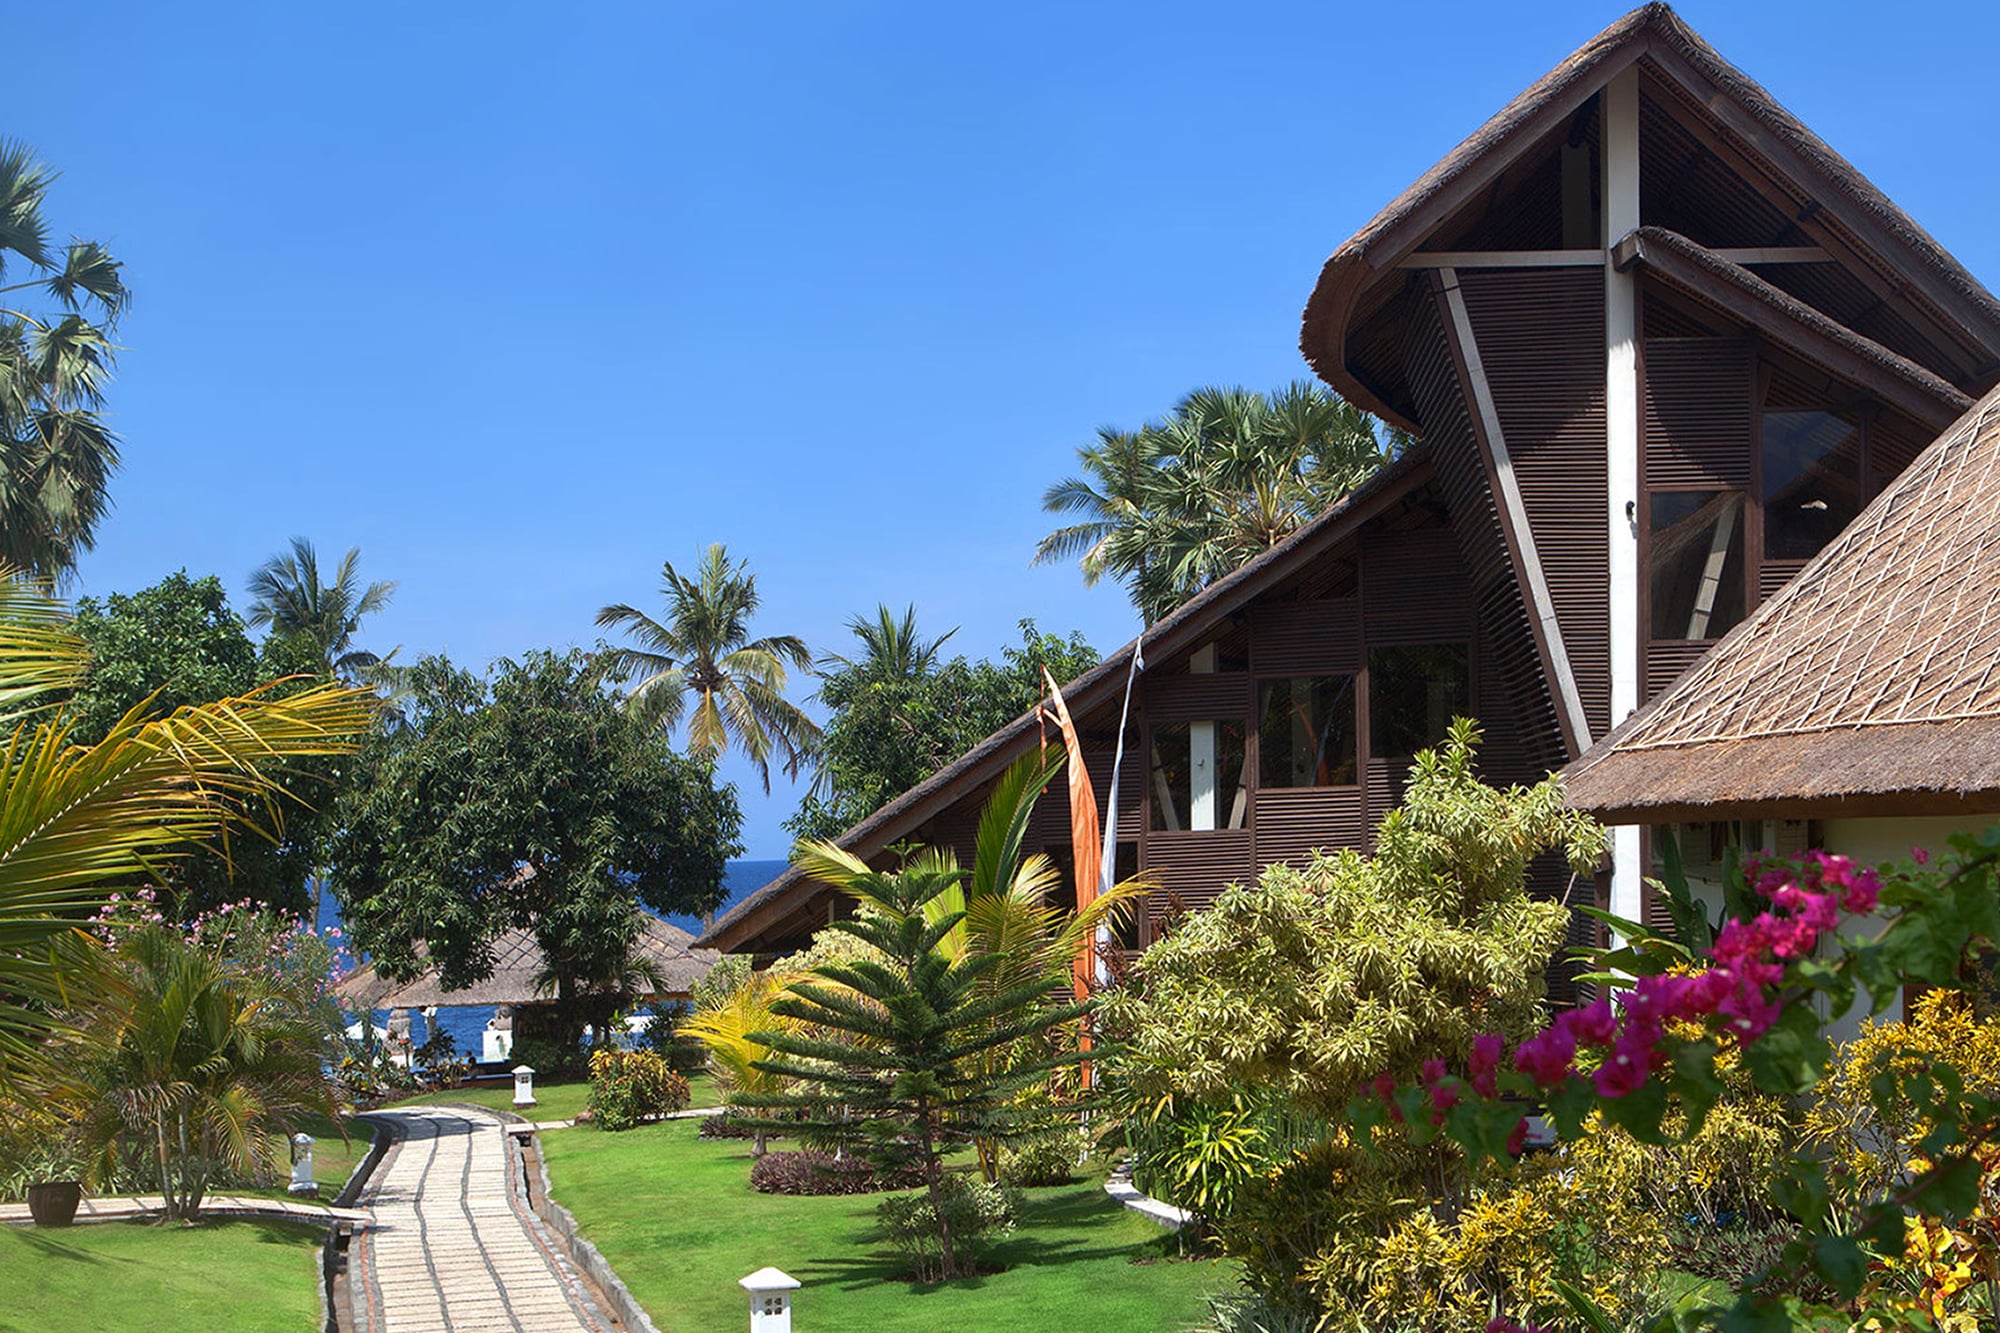 Restaurant Oceanfront Resort in Bali